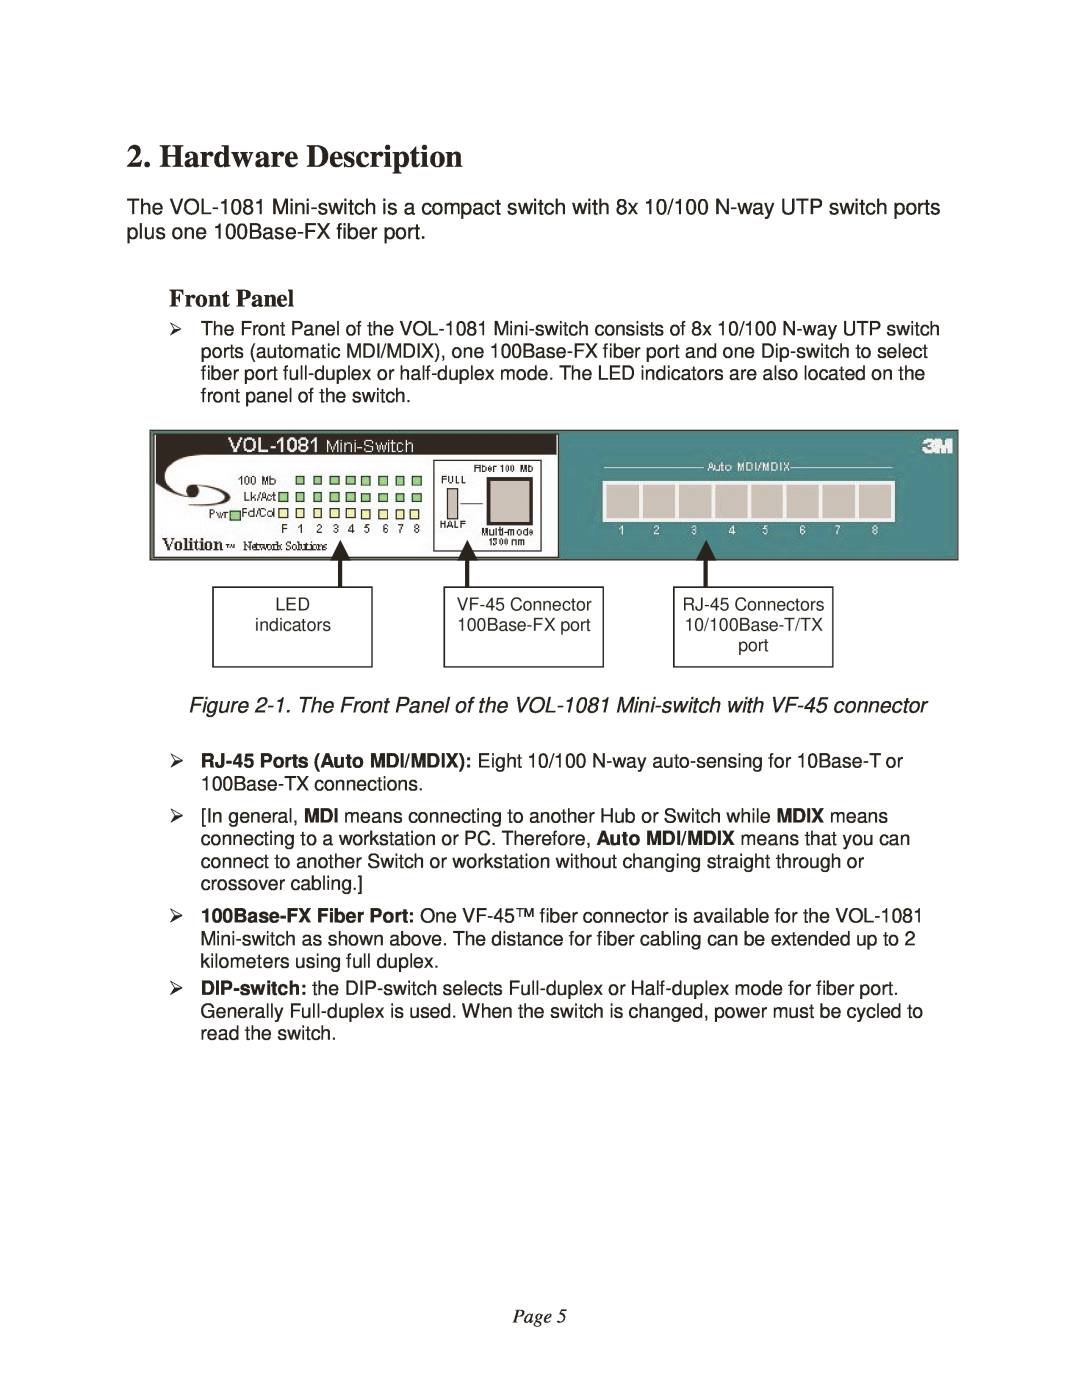 3M VOL-1081 manual Hardware Description, Front Panel, Page 